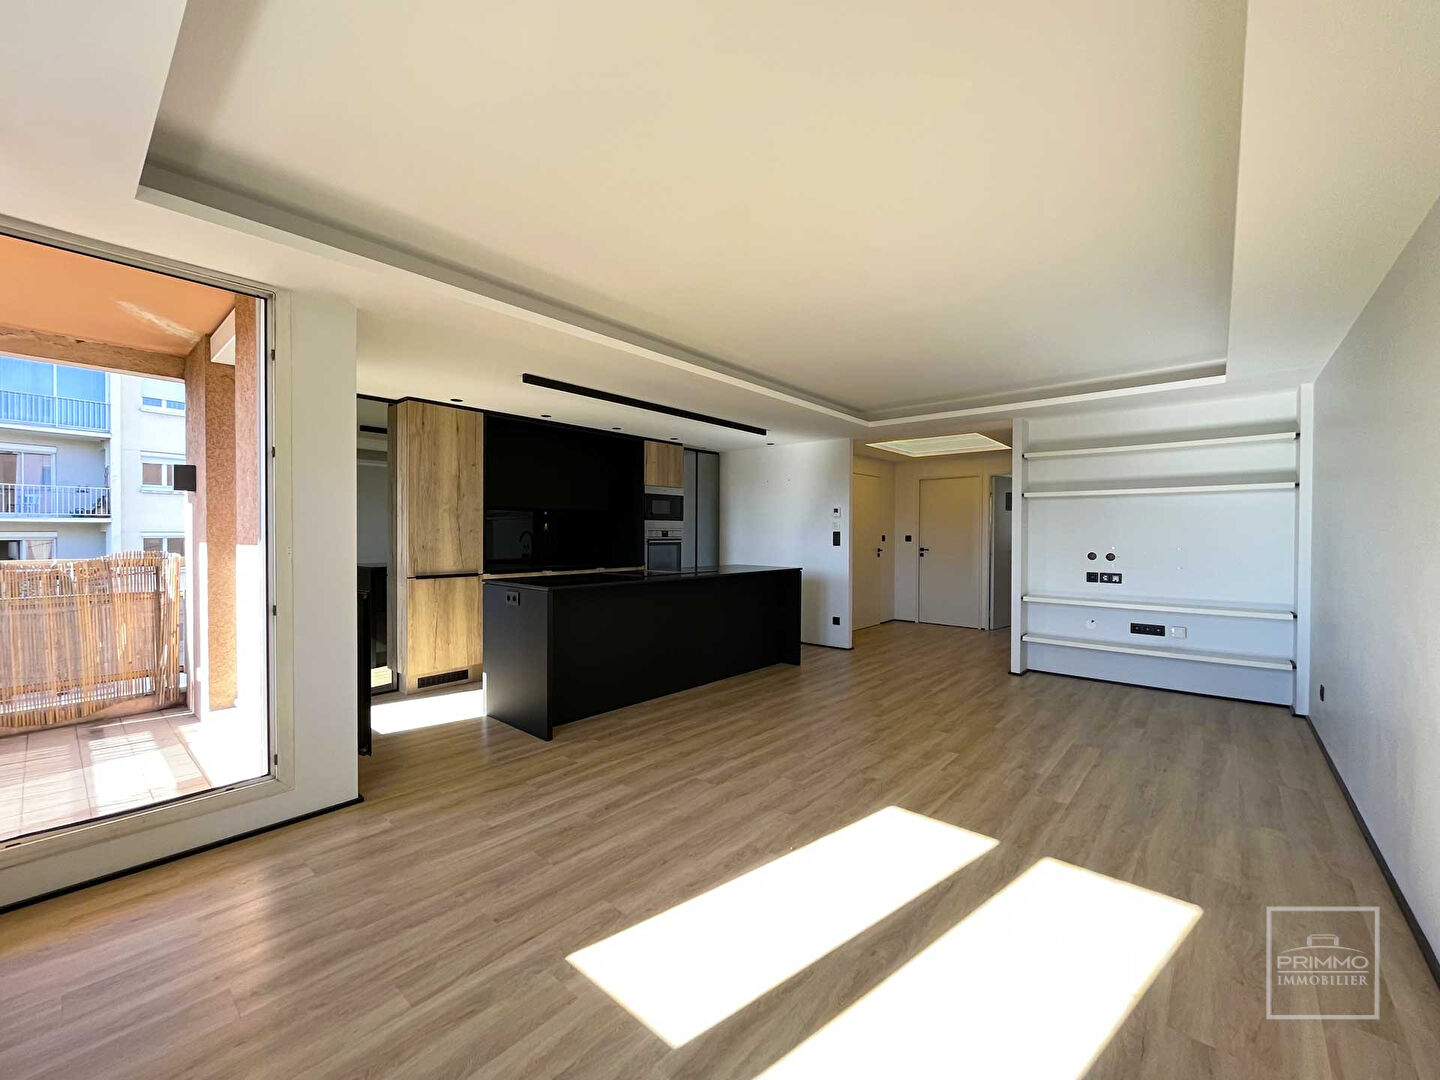 TASSIN LA DEMI LUNE, Appartement T3 rénové d’environ 73m² avec balcon et garage